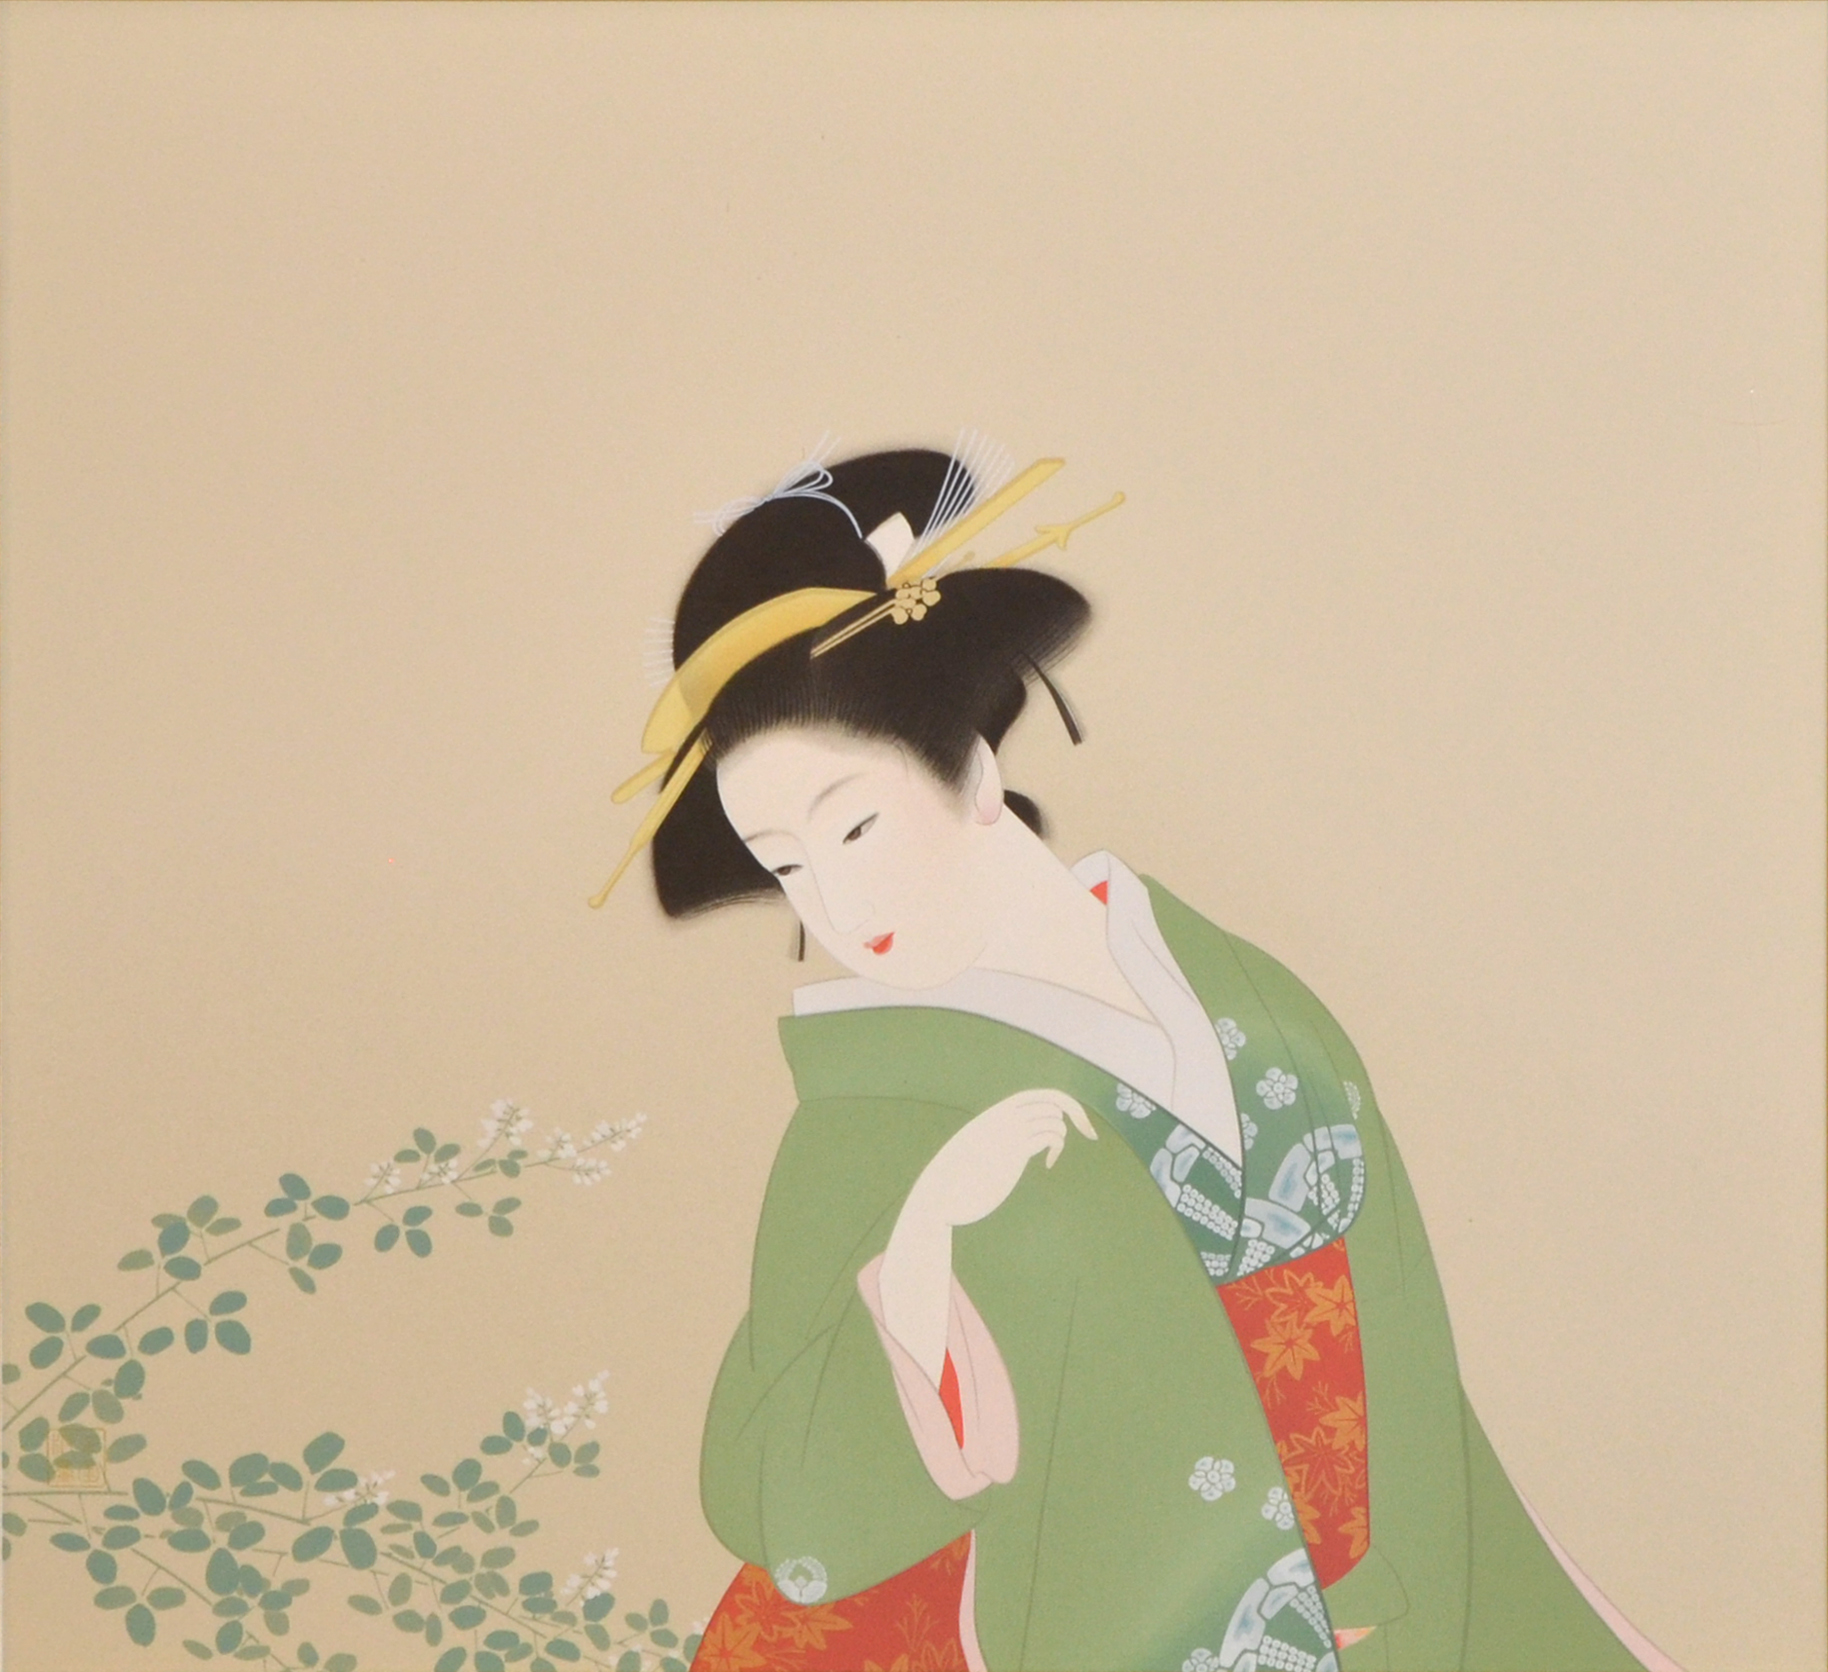 憧れの女流画家たち | 展覧会 | ギャラリー 桜の木